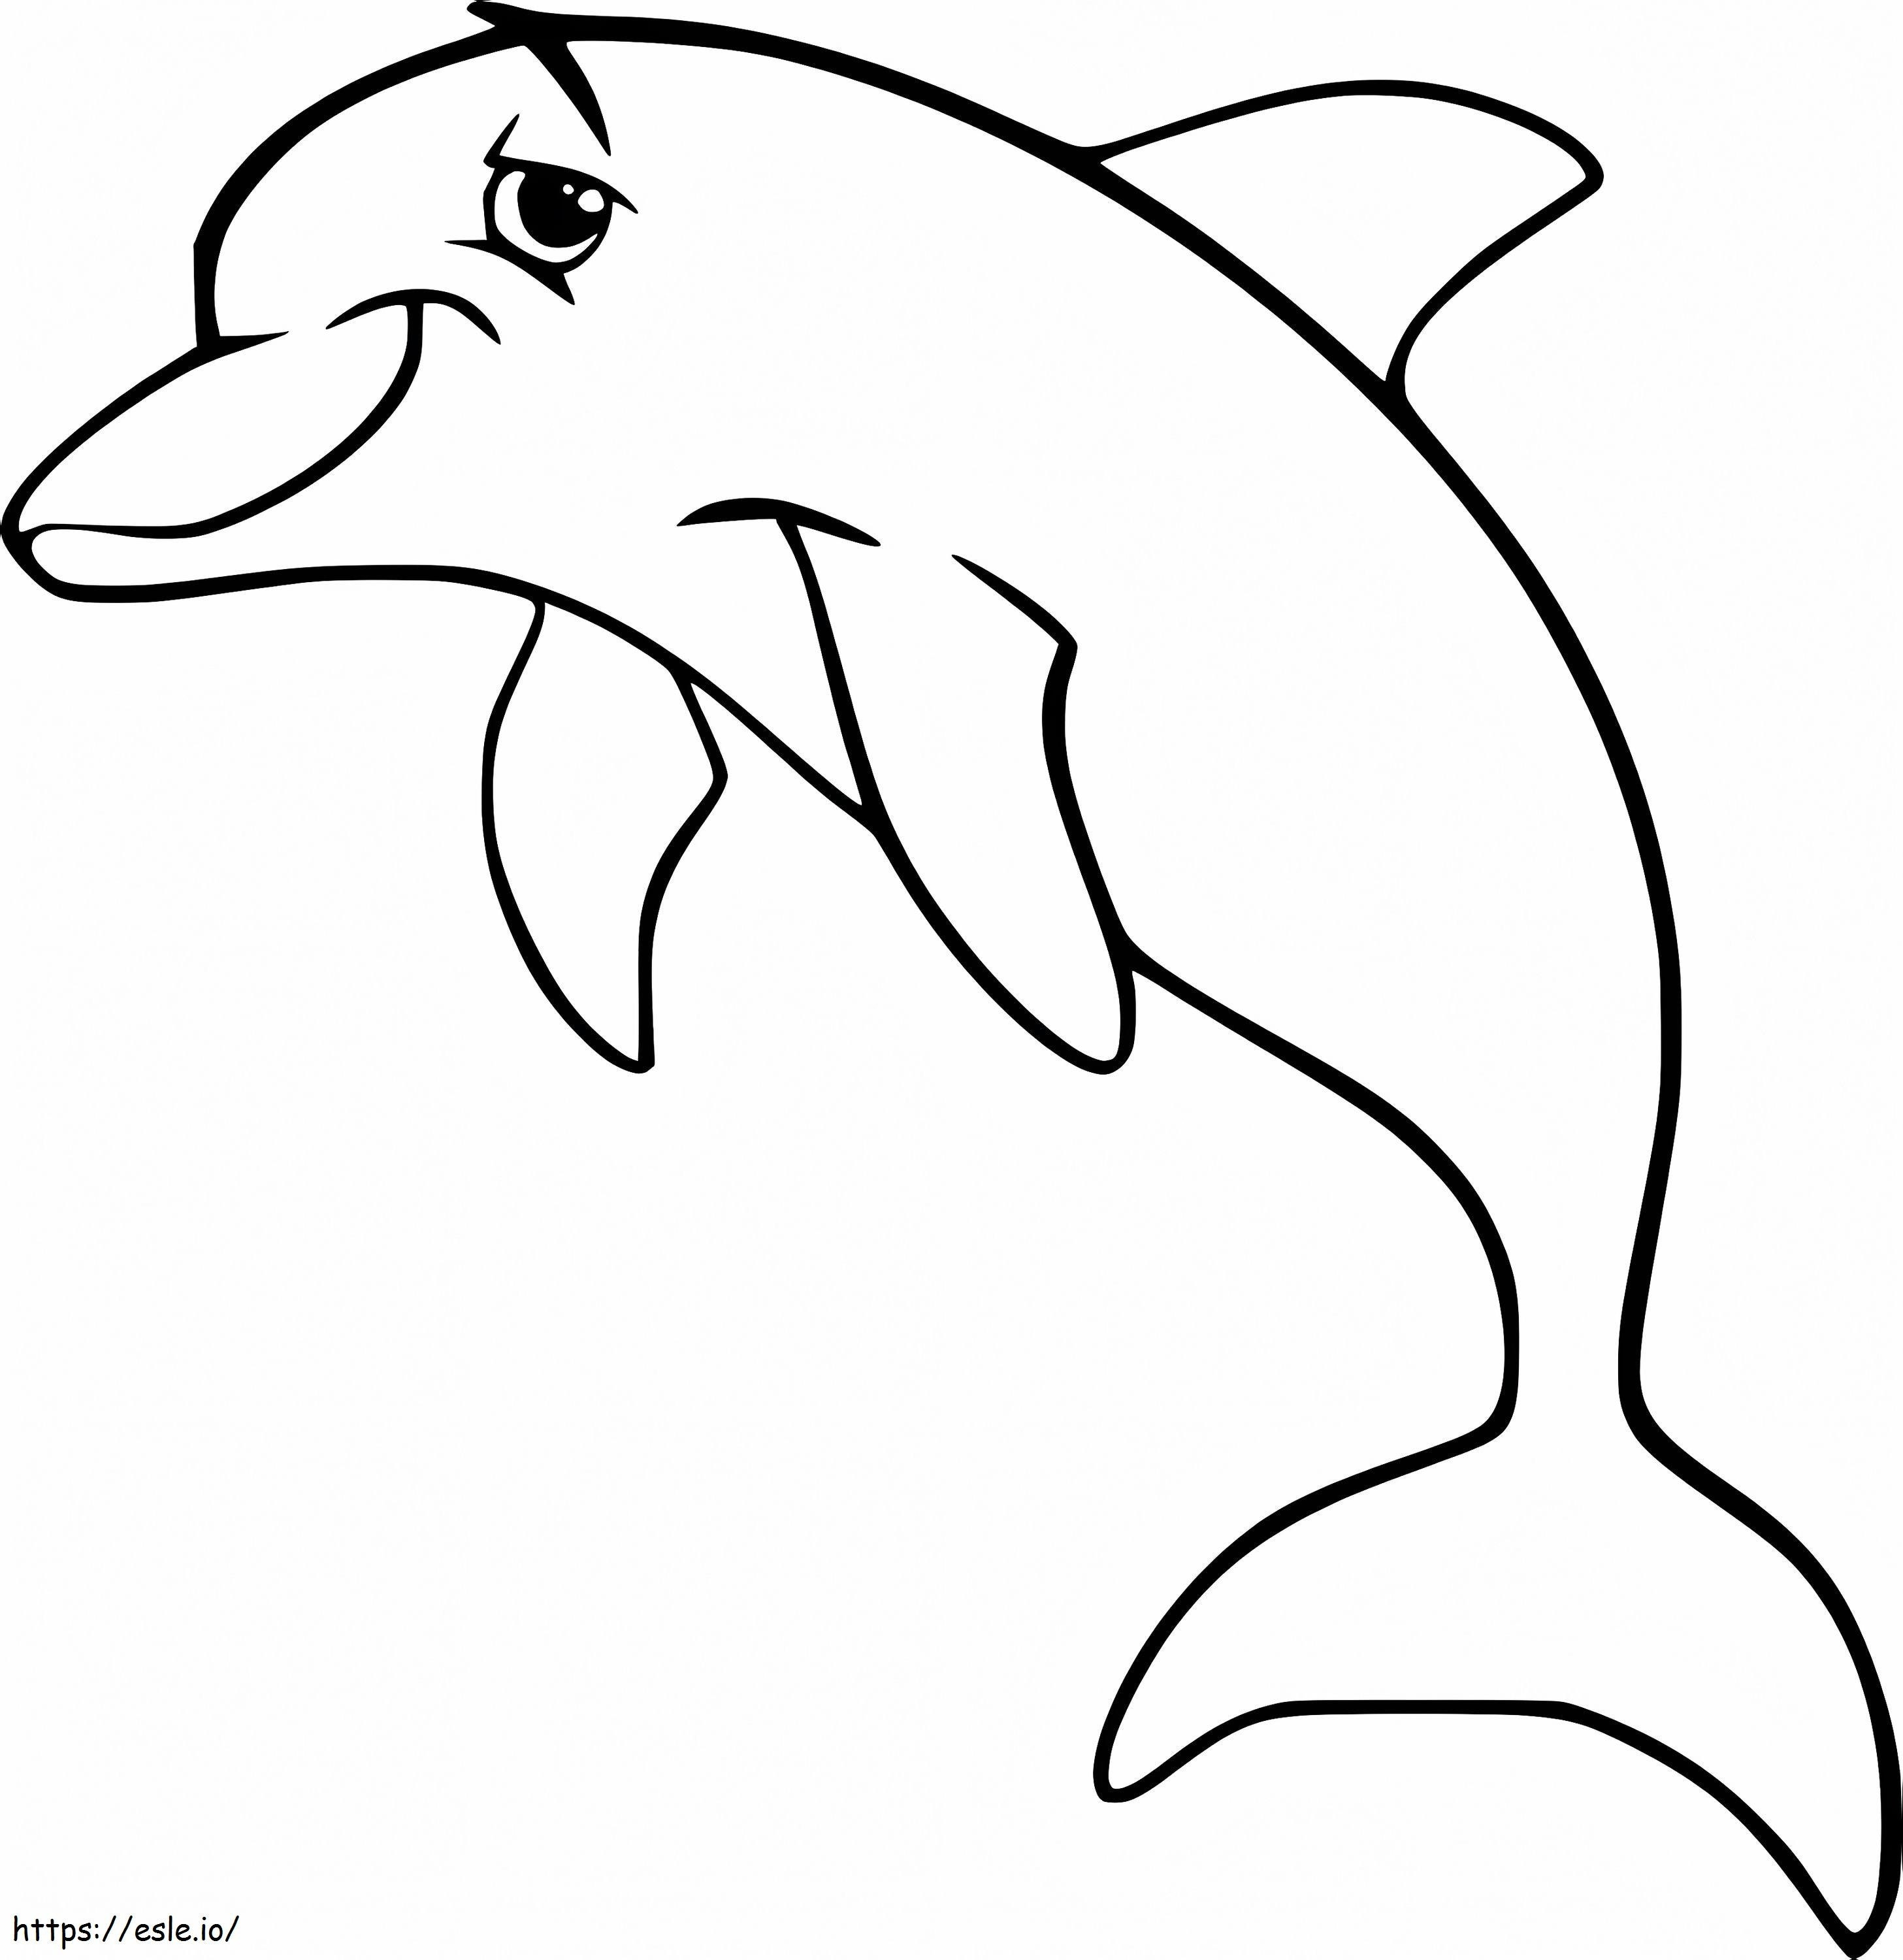 Delfin din desene animate de colorat